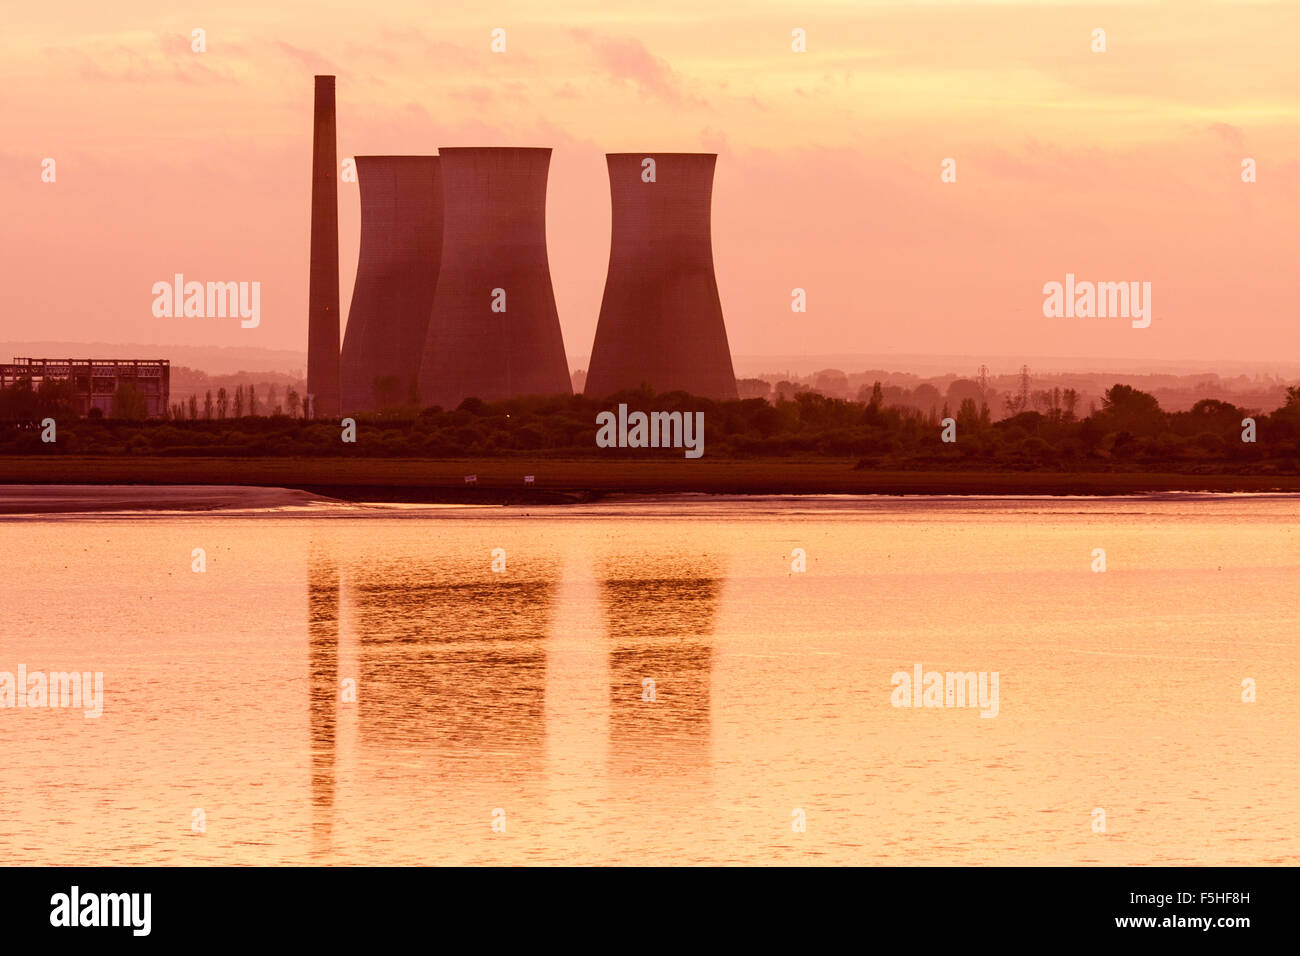 Tele Richborough Kraftwerk mit drei Kühltürme bei Sonnenuntergang, Sonnenuntergang, Licht, Türme in ruhigen Meer von Pegwell Bay wider. Stockfoto